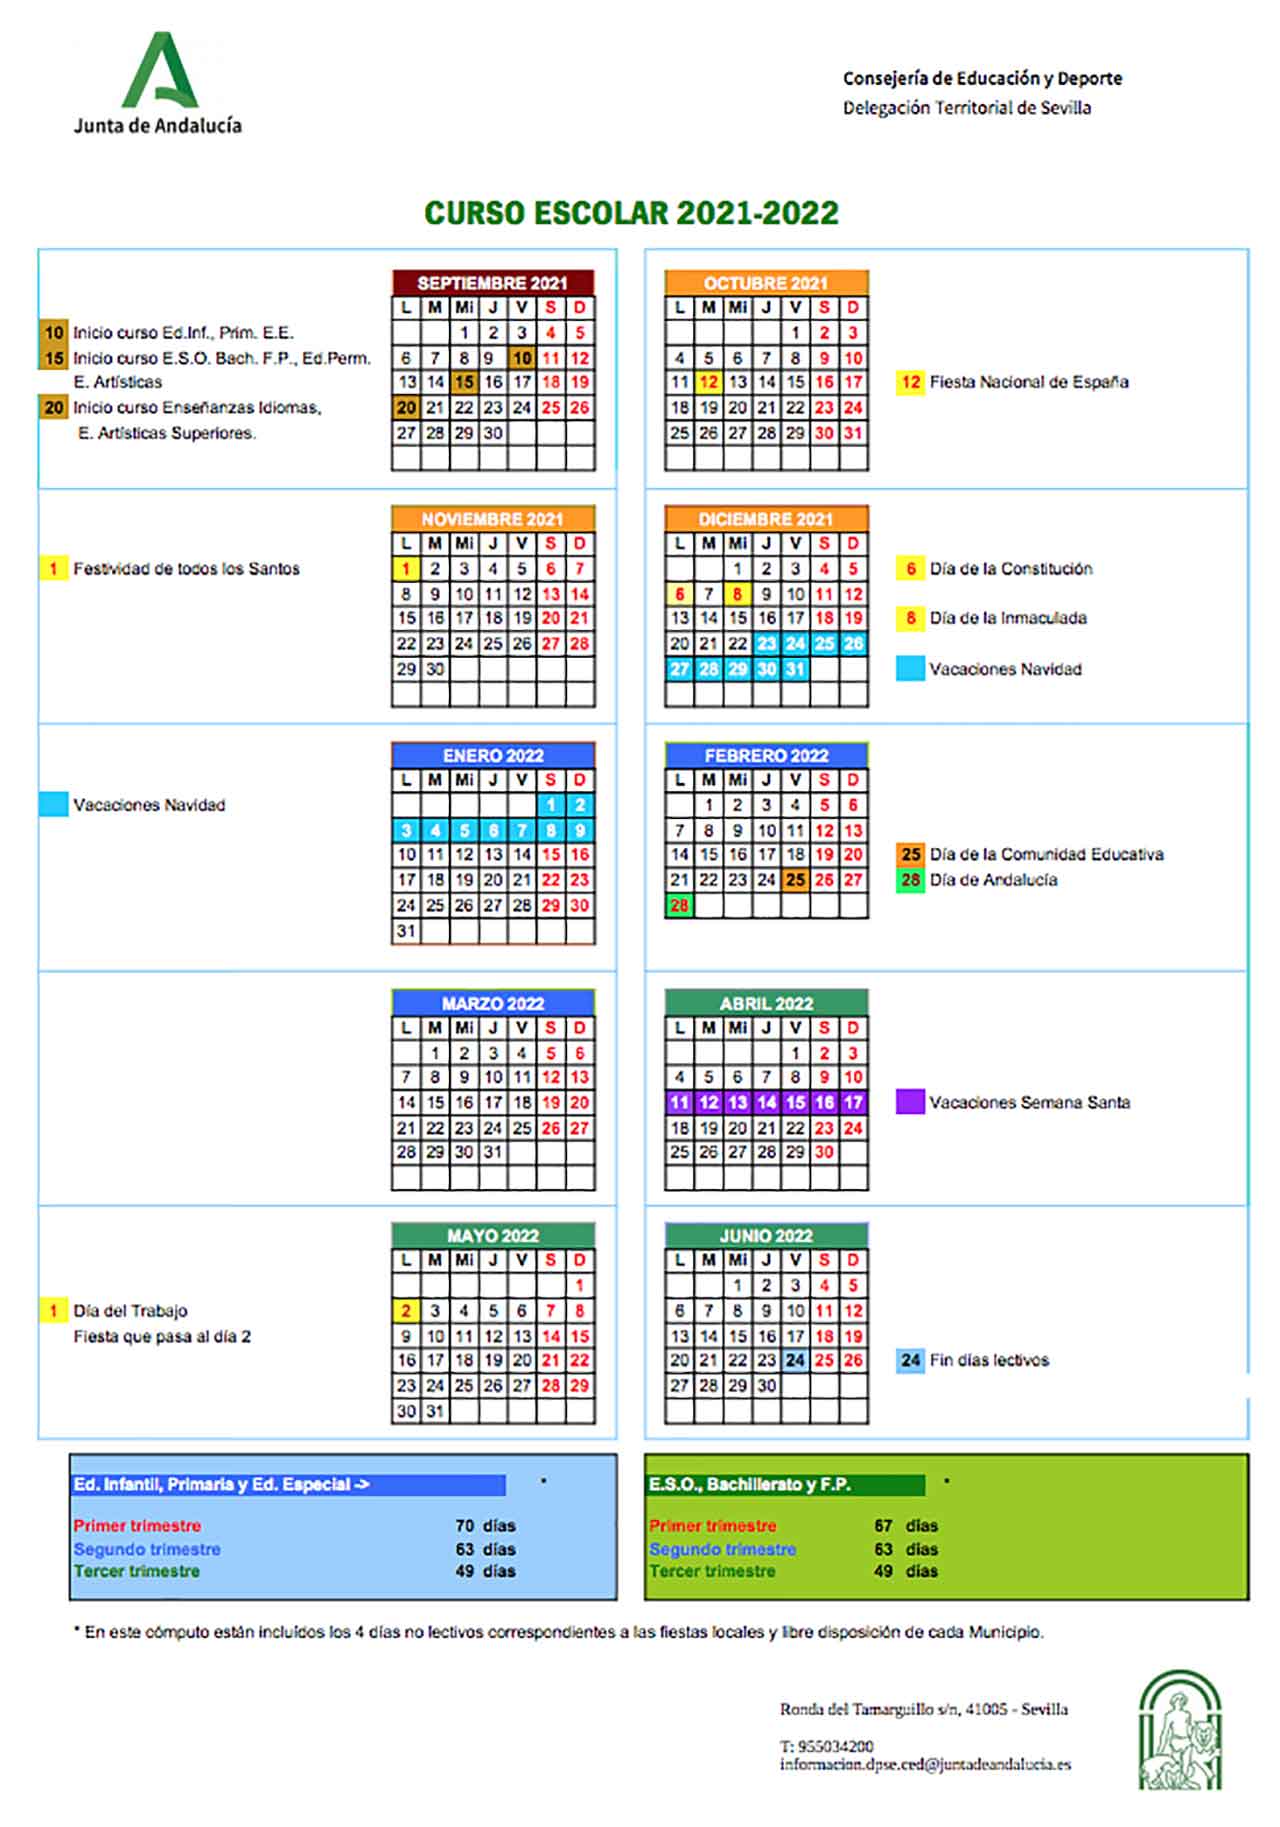 Calendario Escolar 2021 A 2022 Calendario Escolar 2021 2022 Noticia Educaci n Infantil